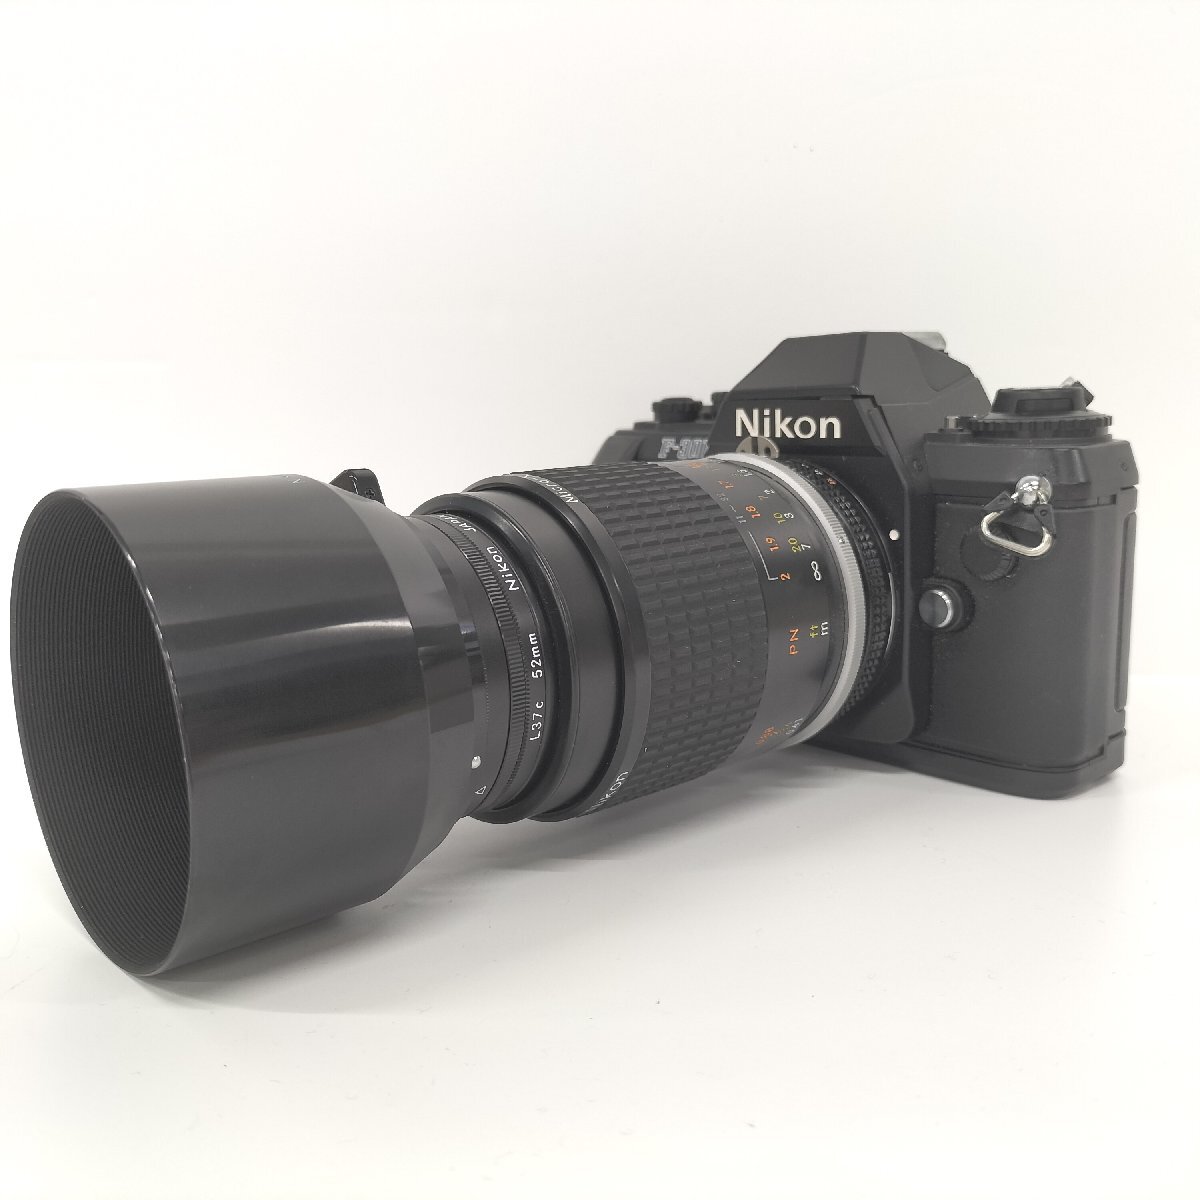 ●Nikon ニコン 一眼レフカメラ ボディ F-301 レンズ Micro NIKKOR 105mm F/2.8の画像2